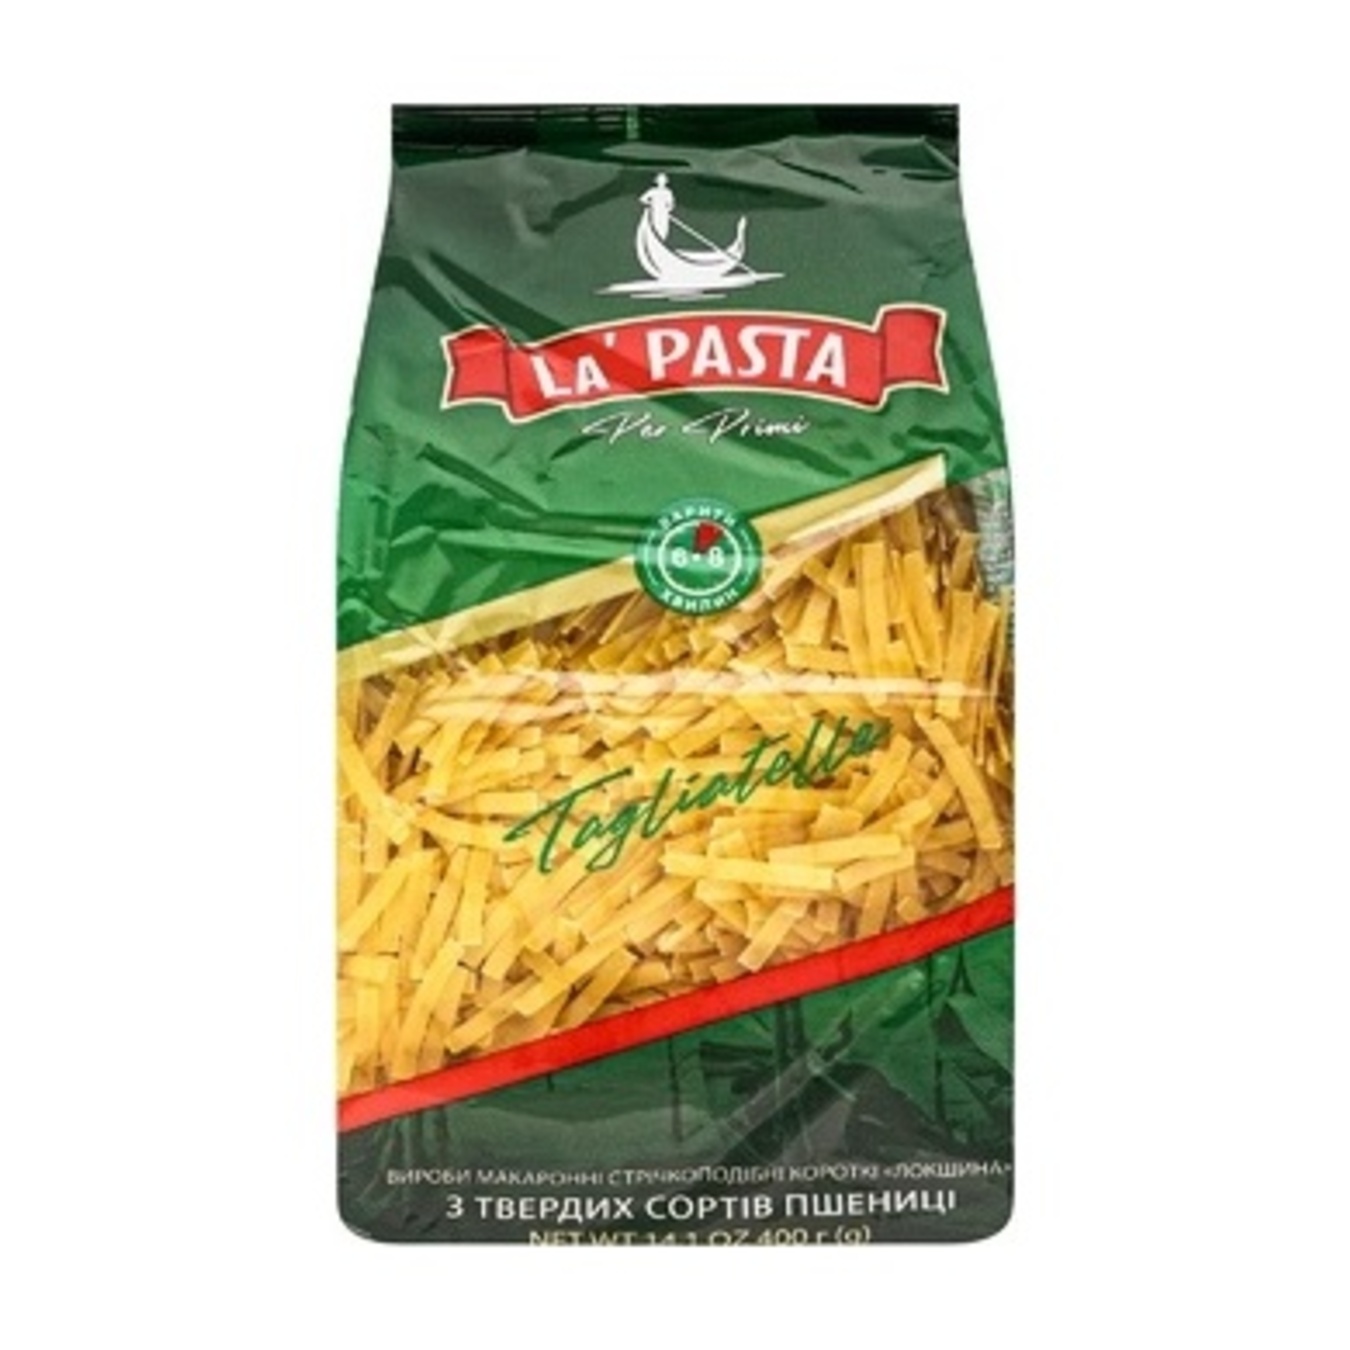 Pasta La Pasta short noodles 400g